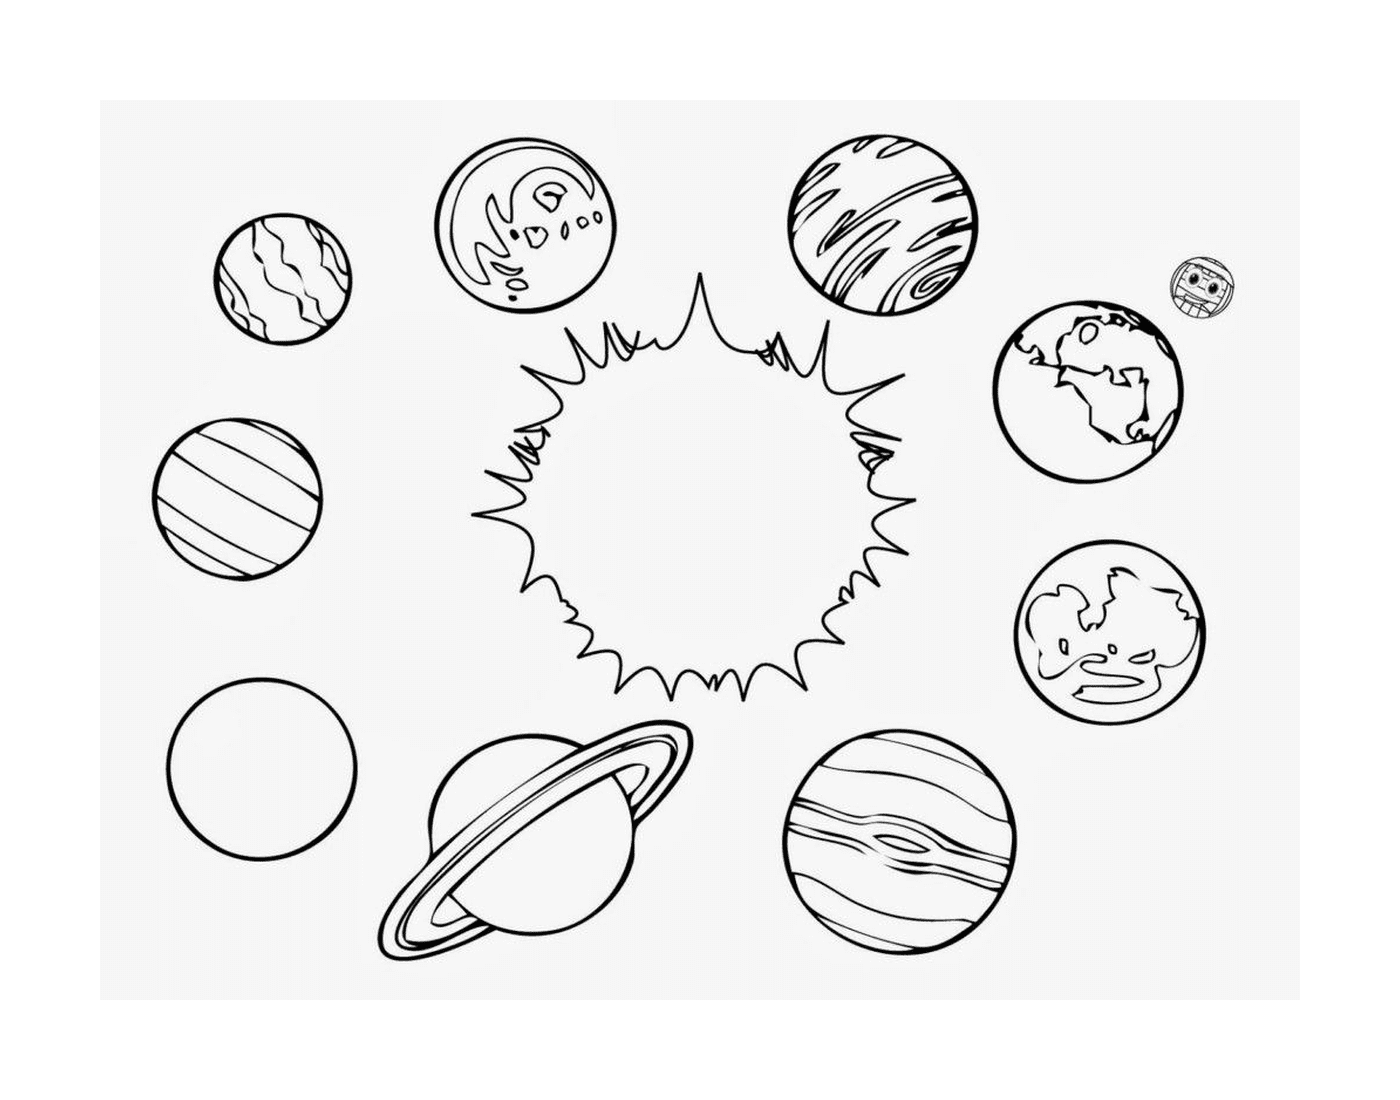  Grupo de planetas en el sistema solar 